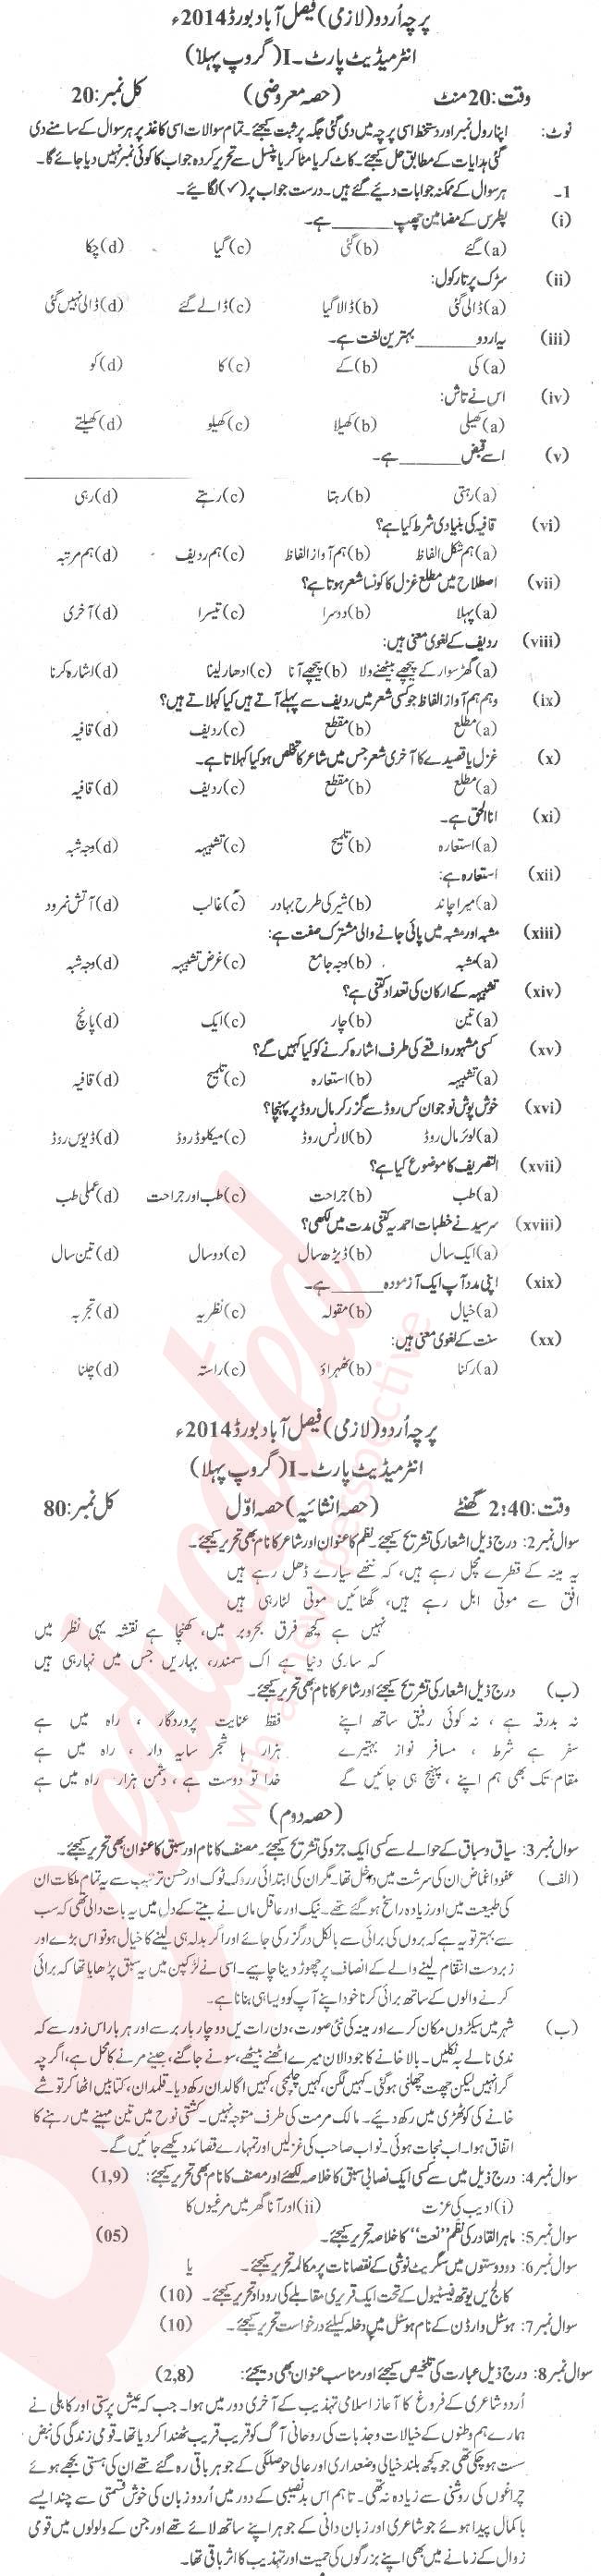 Urdu 11th class Past Paper Group 1 BISE Faisalabad 2014